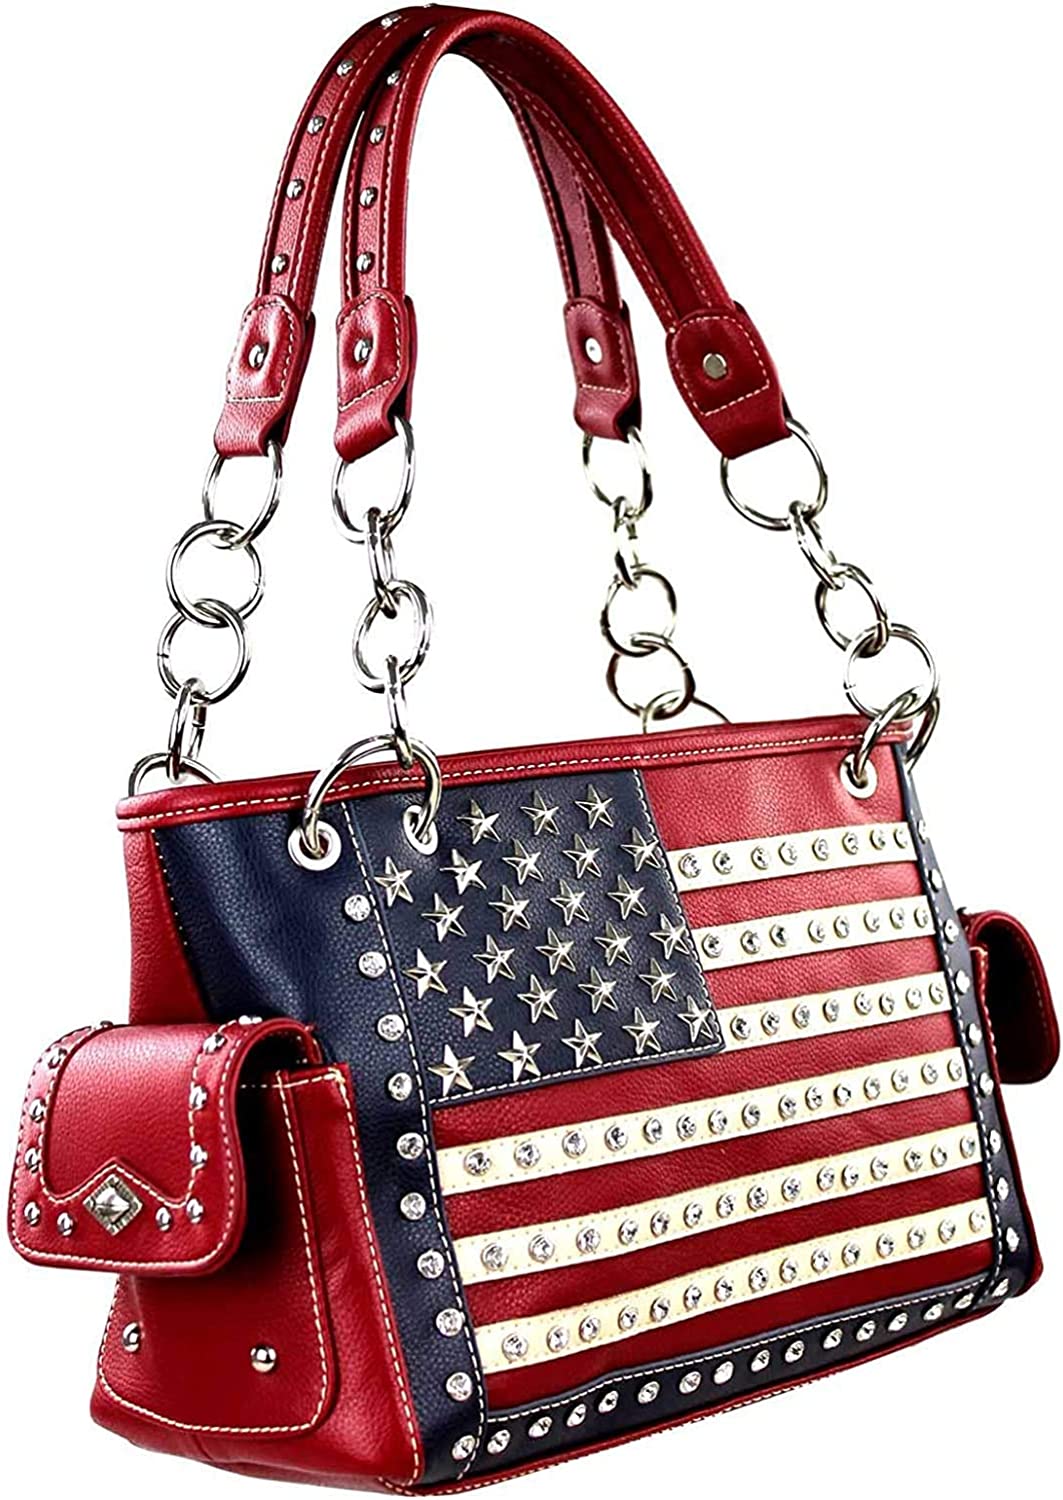 Montana West Women's Patriotic Studded Tote Satchel Handbags